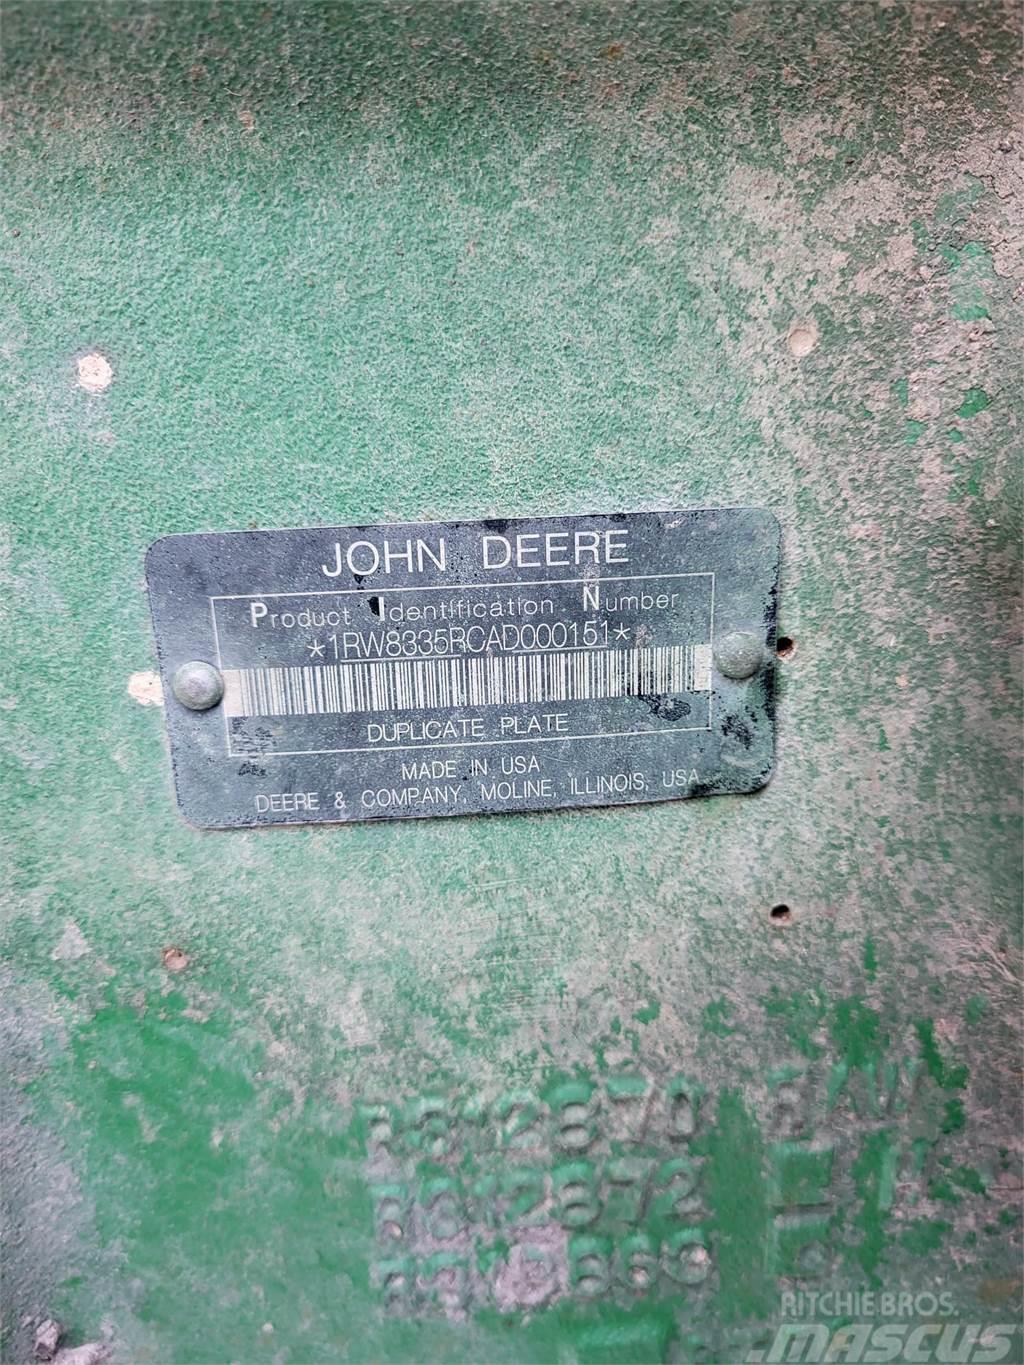 John Deere 8335R Traktoren